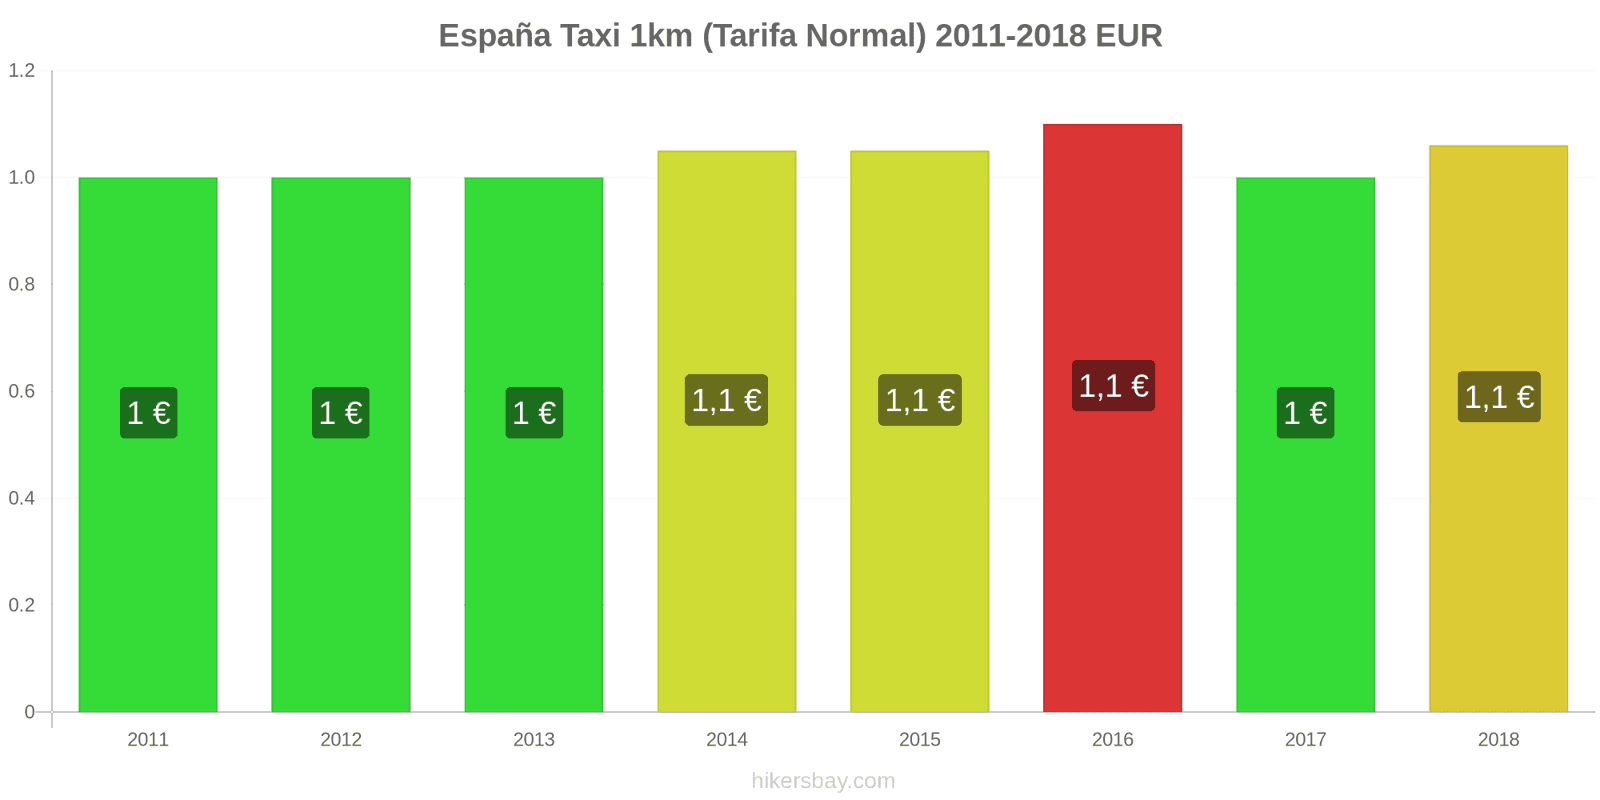 España cambios de precios Taxi 1km (tarifa normal) hikersbay.com